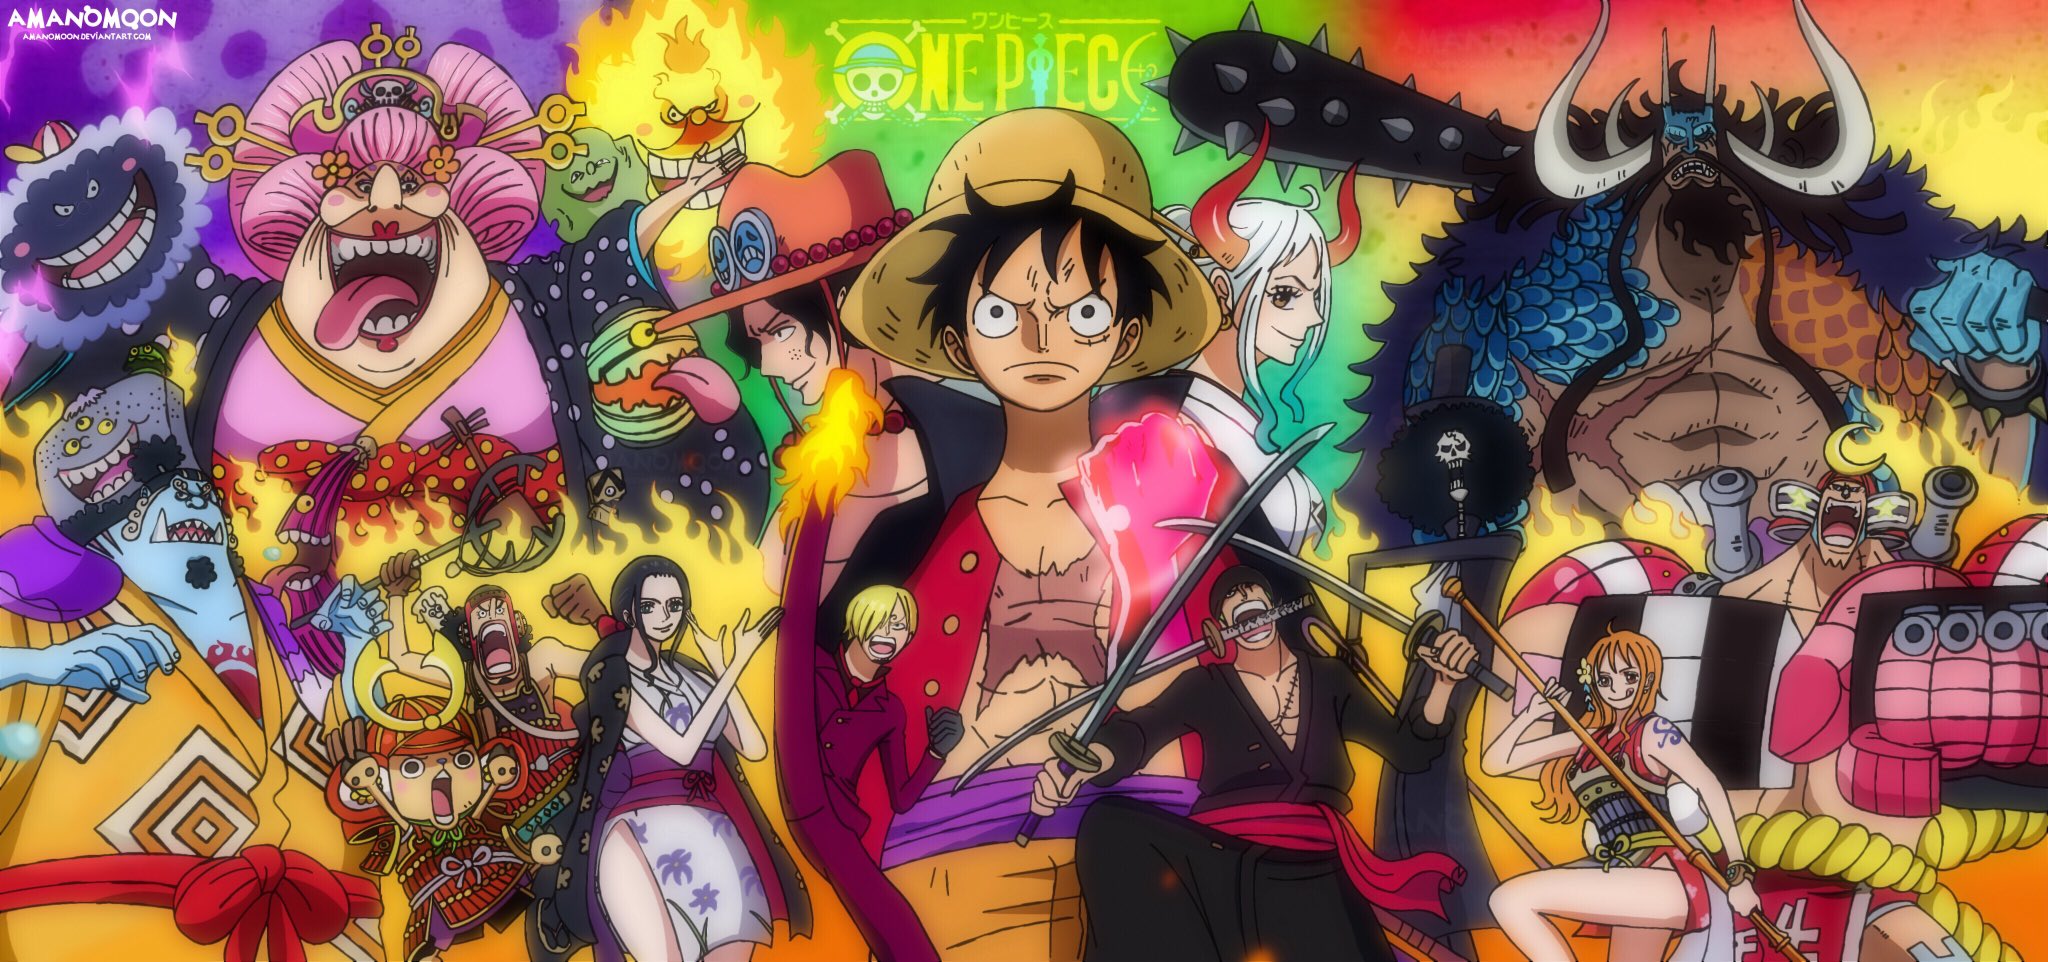 Yamato One Piece, một nhân vật giàu tính cách và sự cố gắng, đã trở thành một trong những nhân vật được yêu thích nhất trong bộ truyện One Piece. Hãy xem hình ảnh liên quan để khám phá thêm về Yamato và thế giới One Piece.